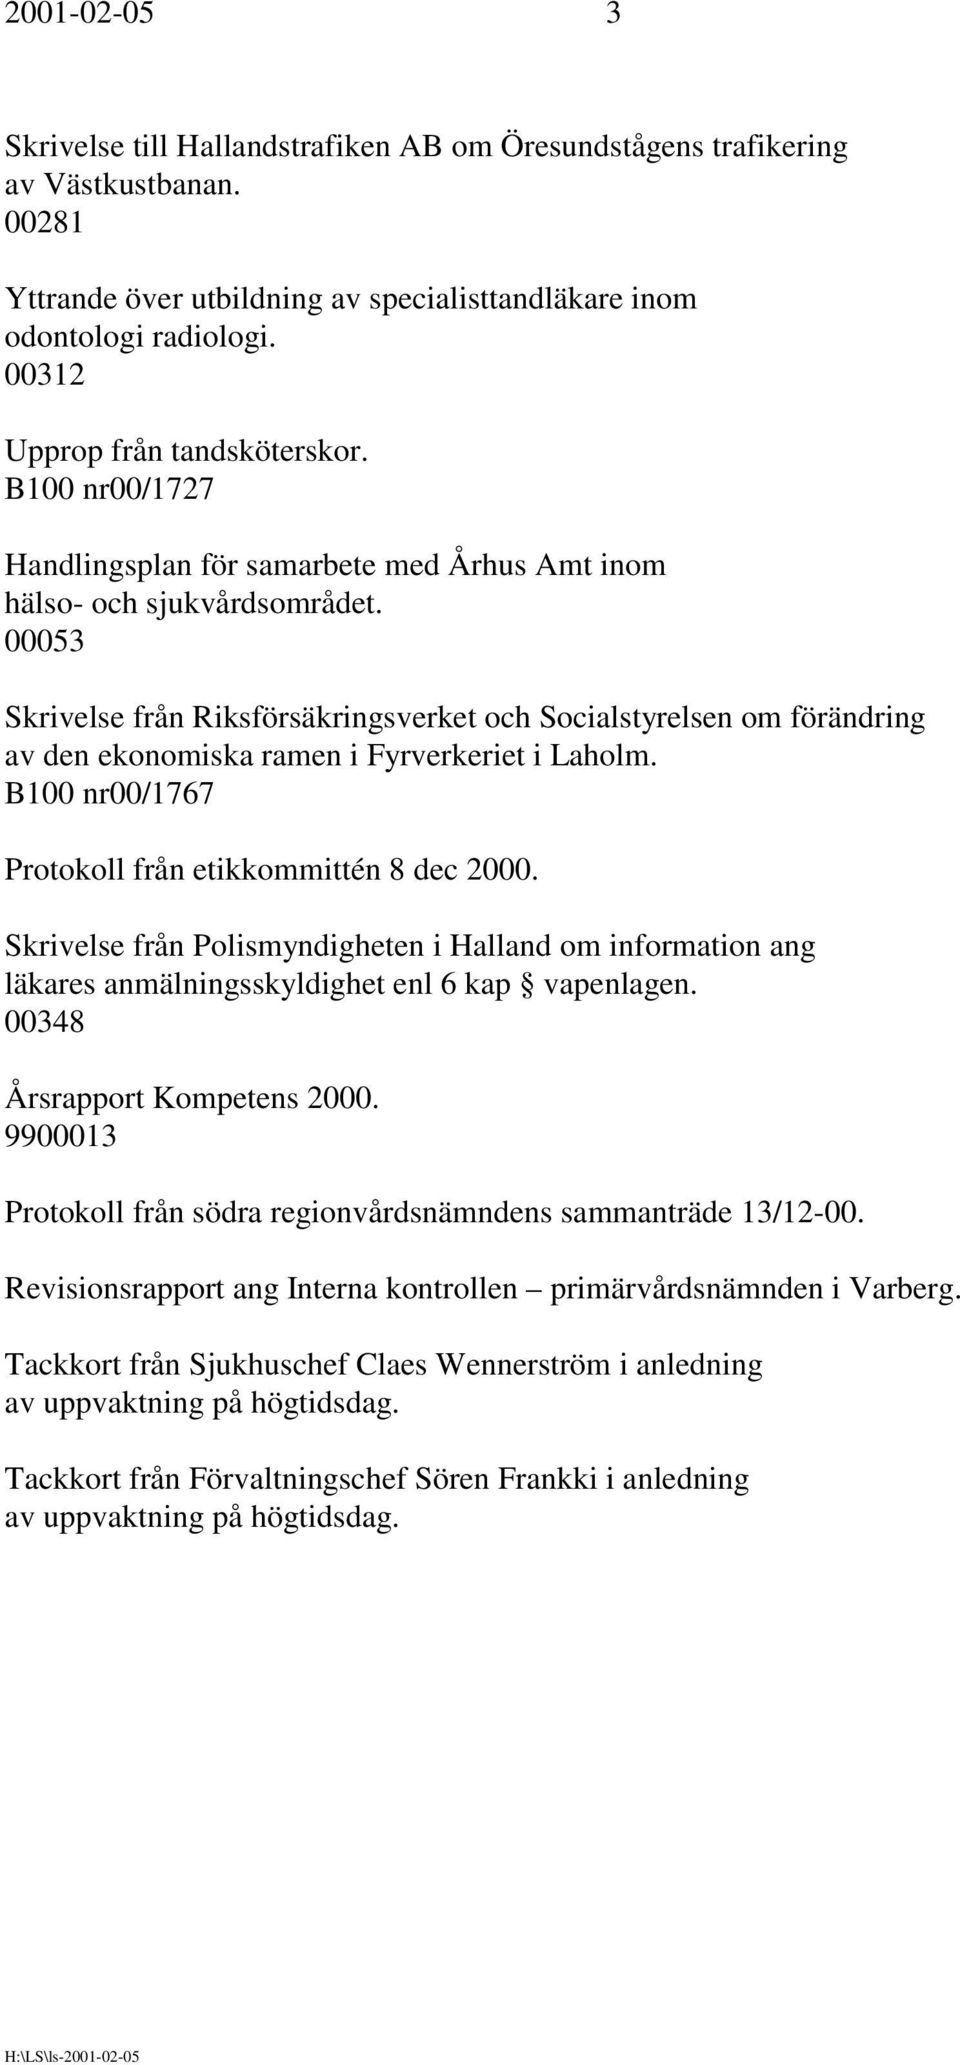 00053 Skrivelse från Riksförsäkringsverket och Socialstyrelsen om förändring av den ekonomiska ramen i Fyrverkeriet i Laholm. B100 nr00/1767 Protokoll från etikkommittén 8 dec 2000.